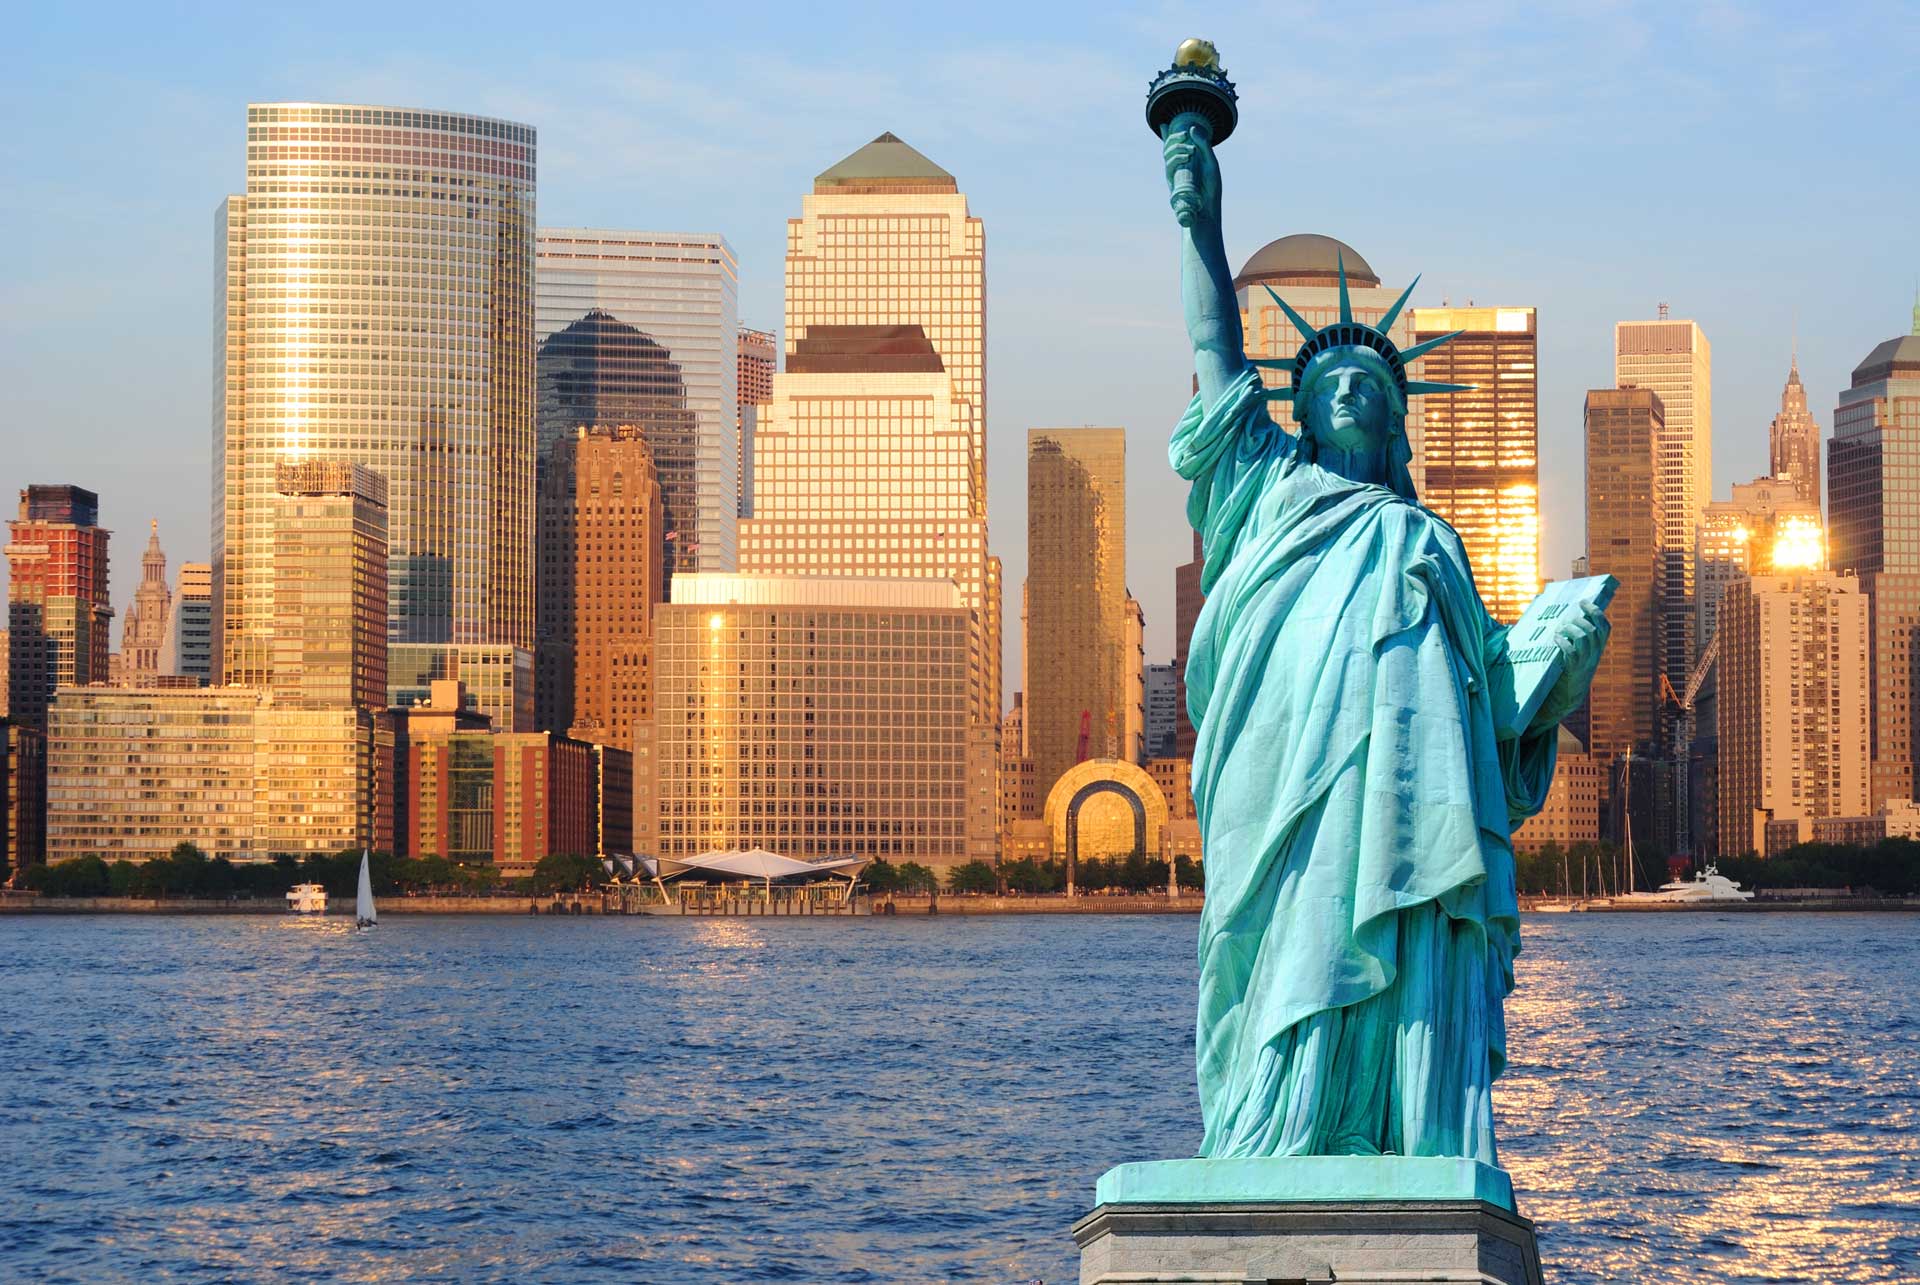 Чем известна страна сша. Статуя свободы Нью-Йорк. Нью Йорк стадия свободы. Нью-Йорк бстатуясвободы. Нью-Йорк достопримечательности статуя свободы.